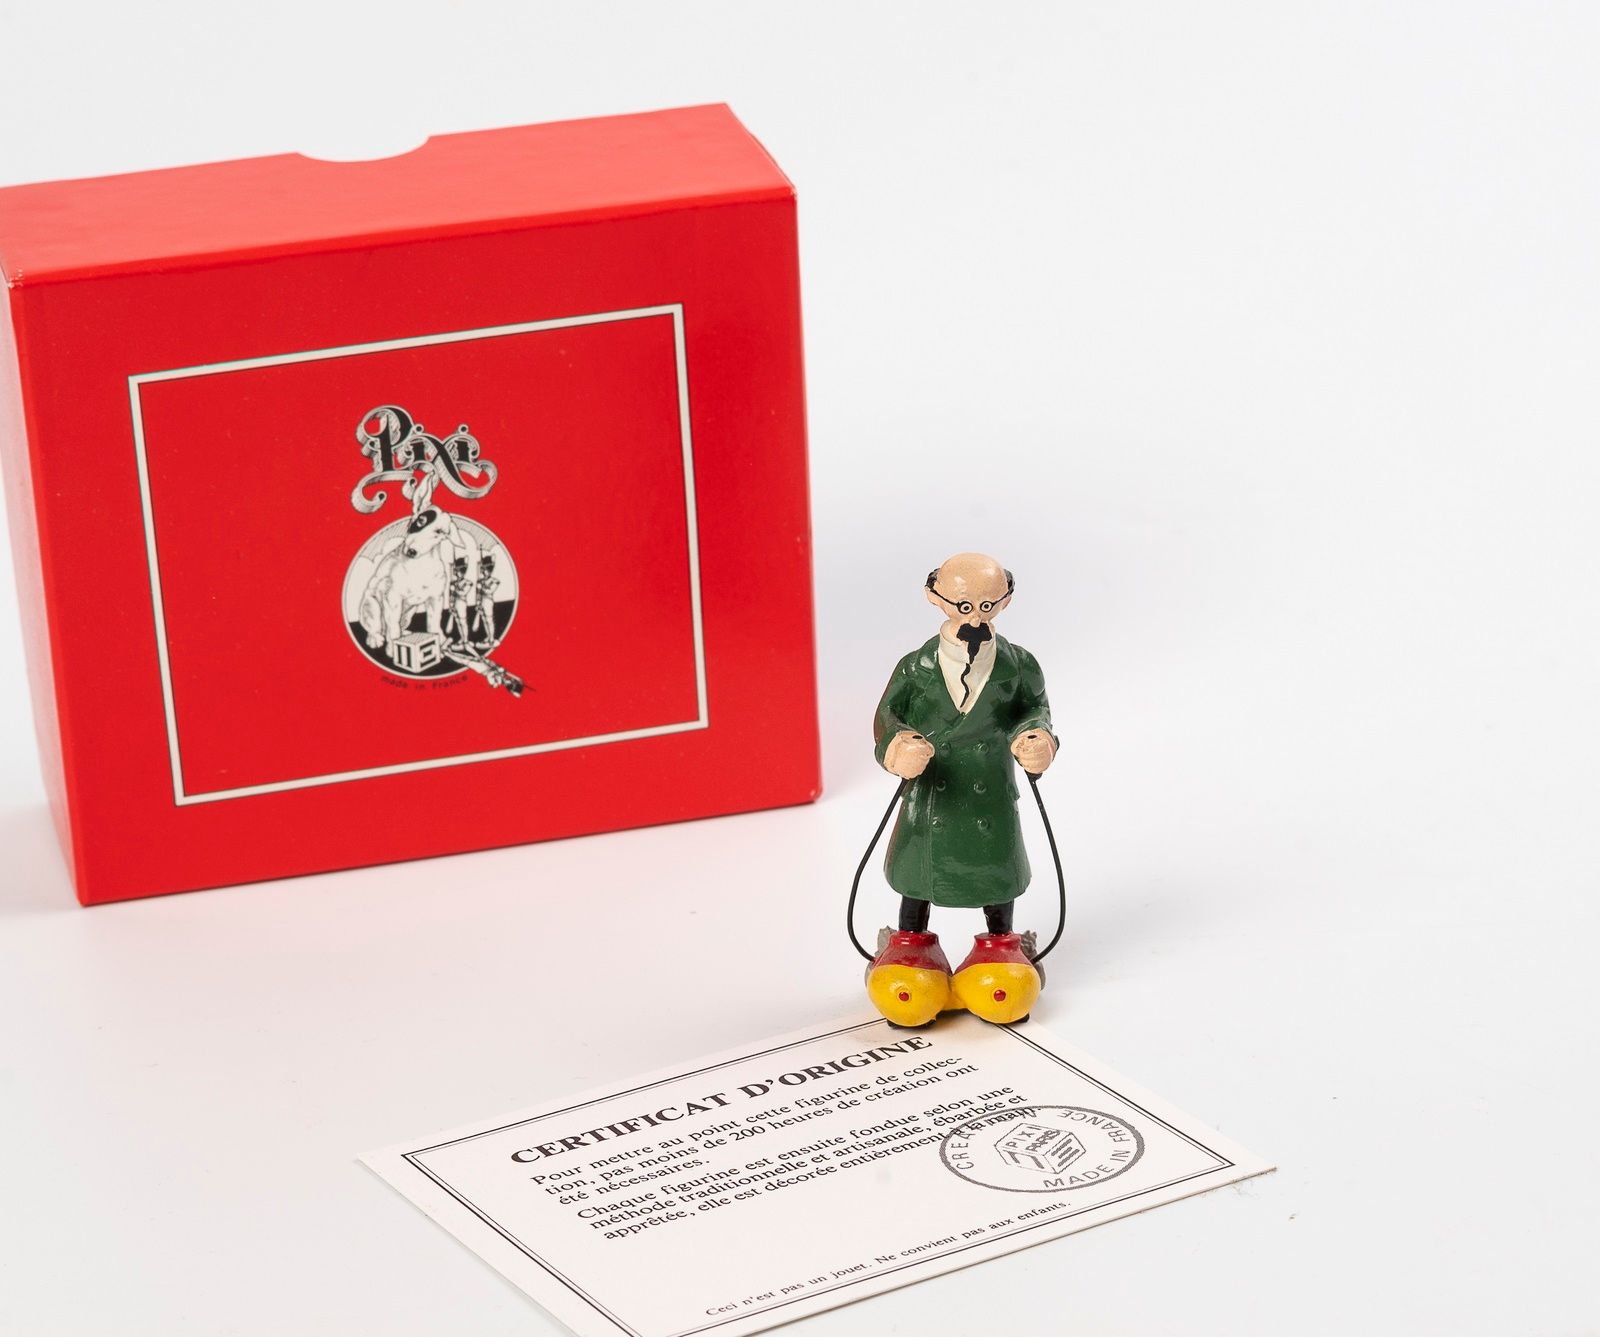 Null 可乐有货


海格/皮克斯


Hergé :丁丁系列第2号


库存可乐：溜冰鞋上的葵花。


参考4507。


有盒子和证书。